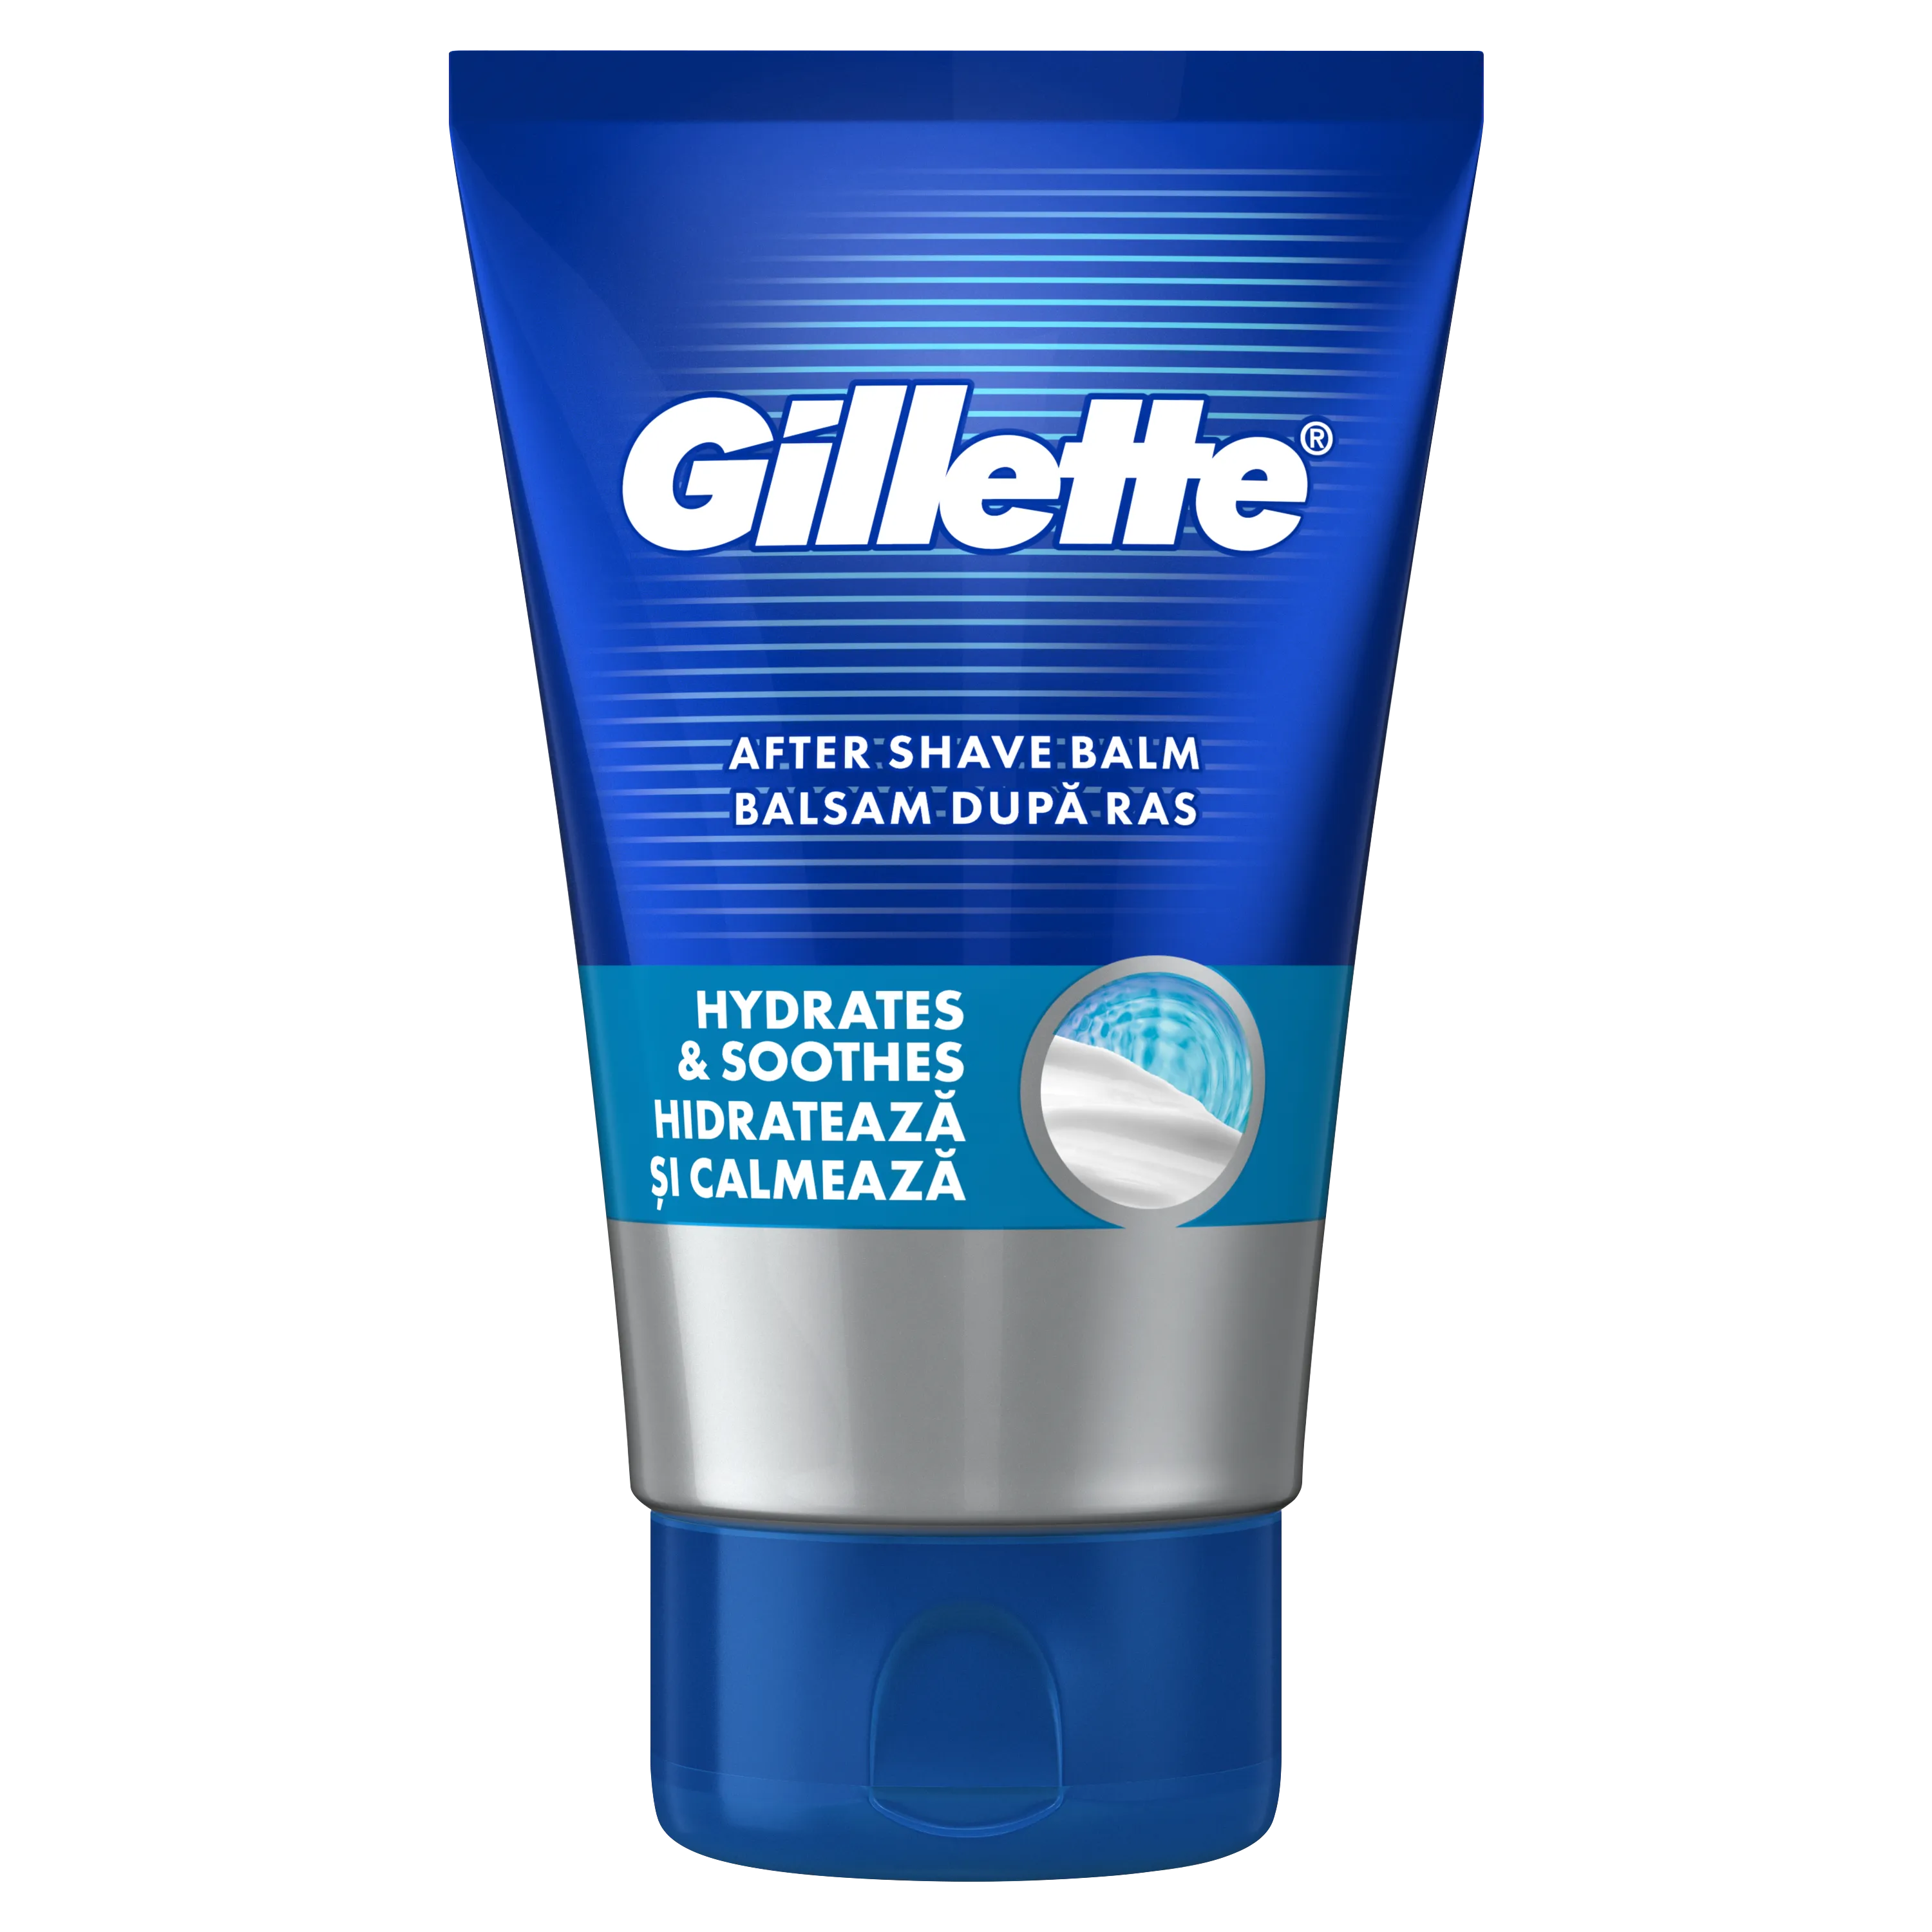 Gillette Nawilżająco-kojący balsam po goleniu 3w1 z SPF 15, 100 ml